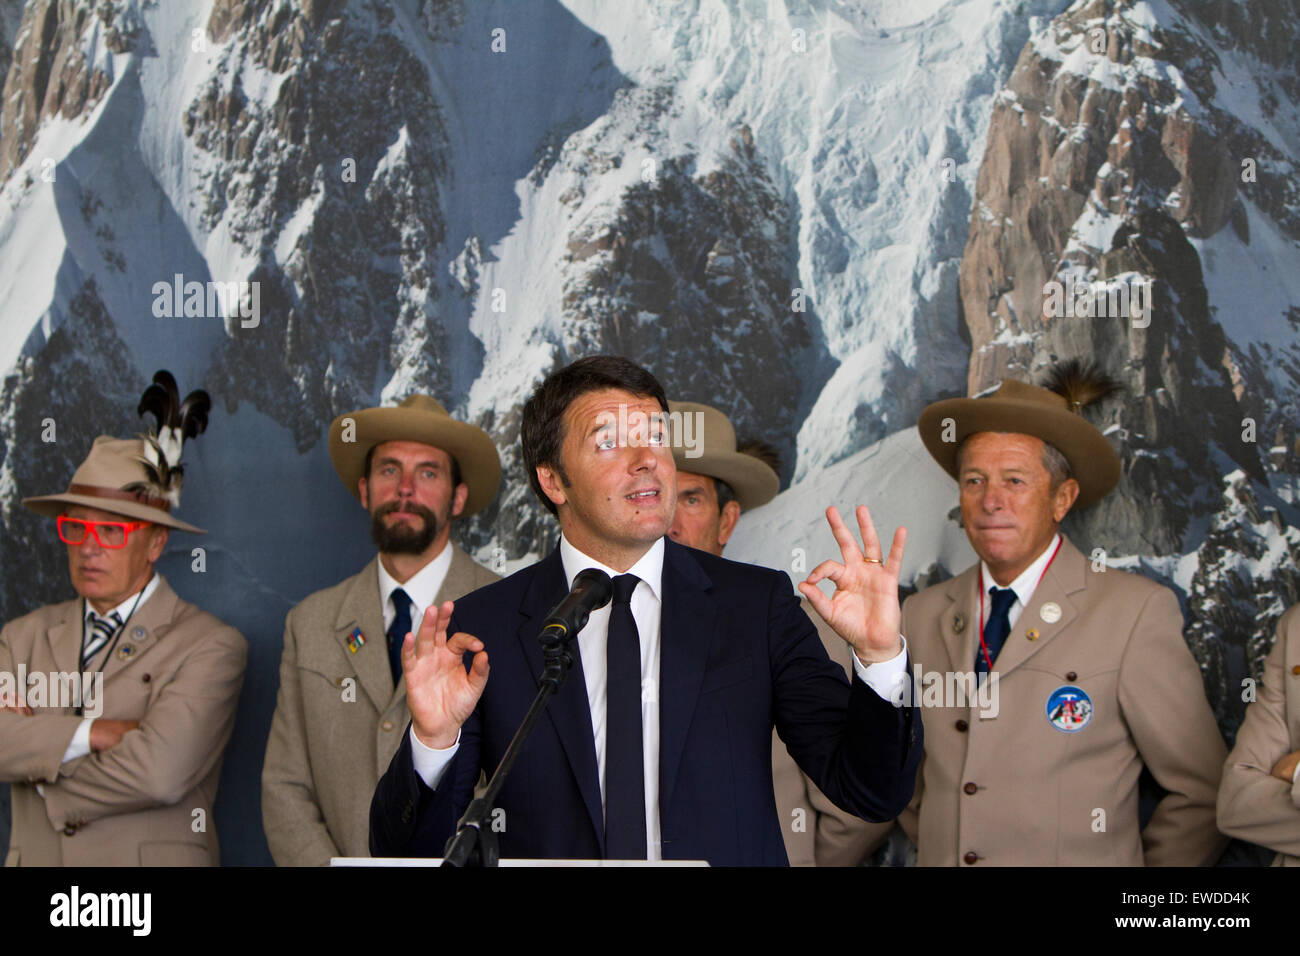 Courmayeur, Italien, 23. Juni 2015. Italiens Premier Matteo Renzi Gesten während des Sprechens bei der neuen Montblanc Seilbahn Einweihung. Einige Bergführer Courmayeur besuchen im Hintergrund. Stockfoto